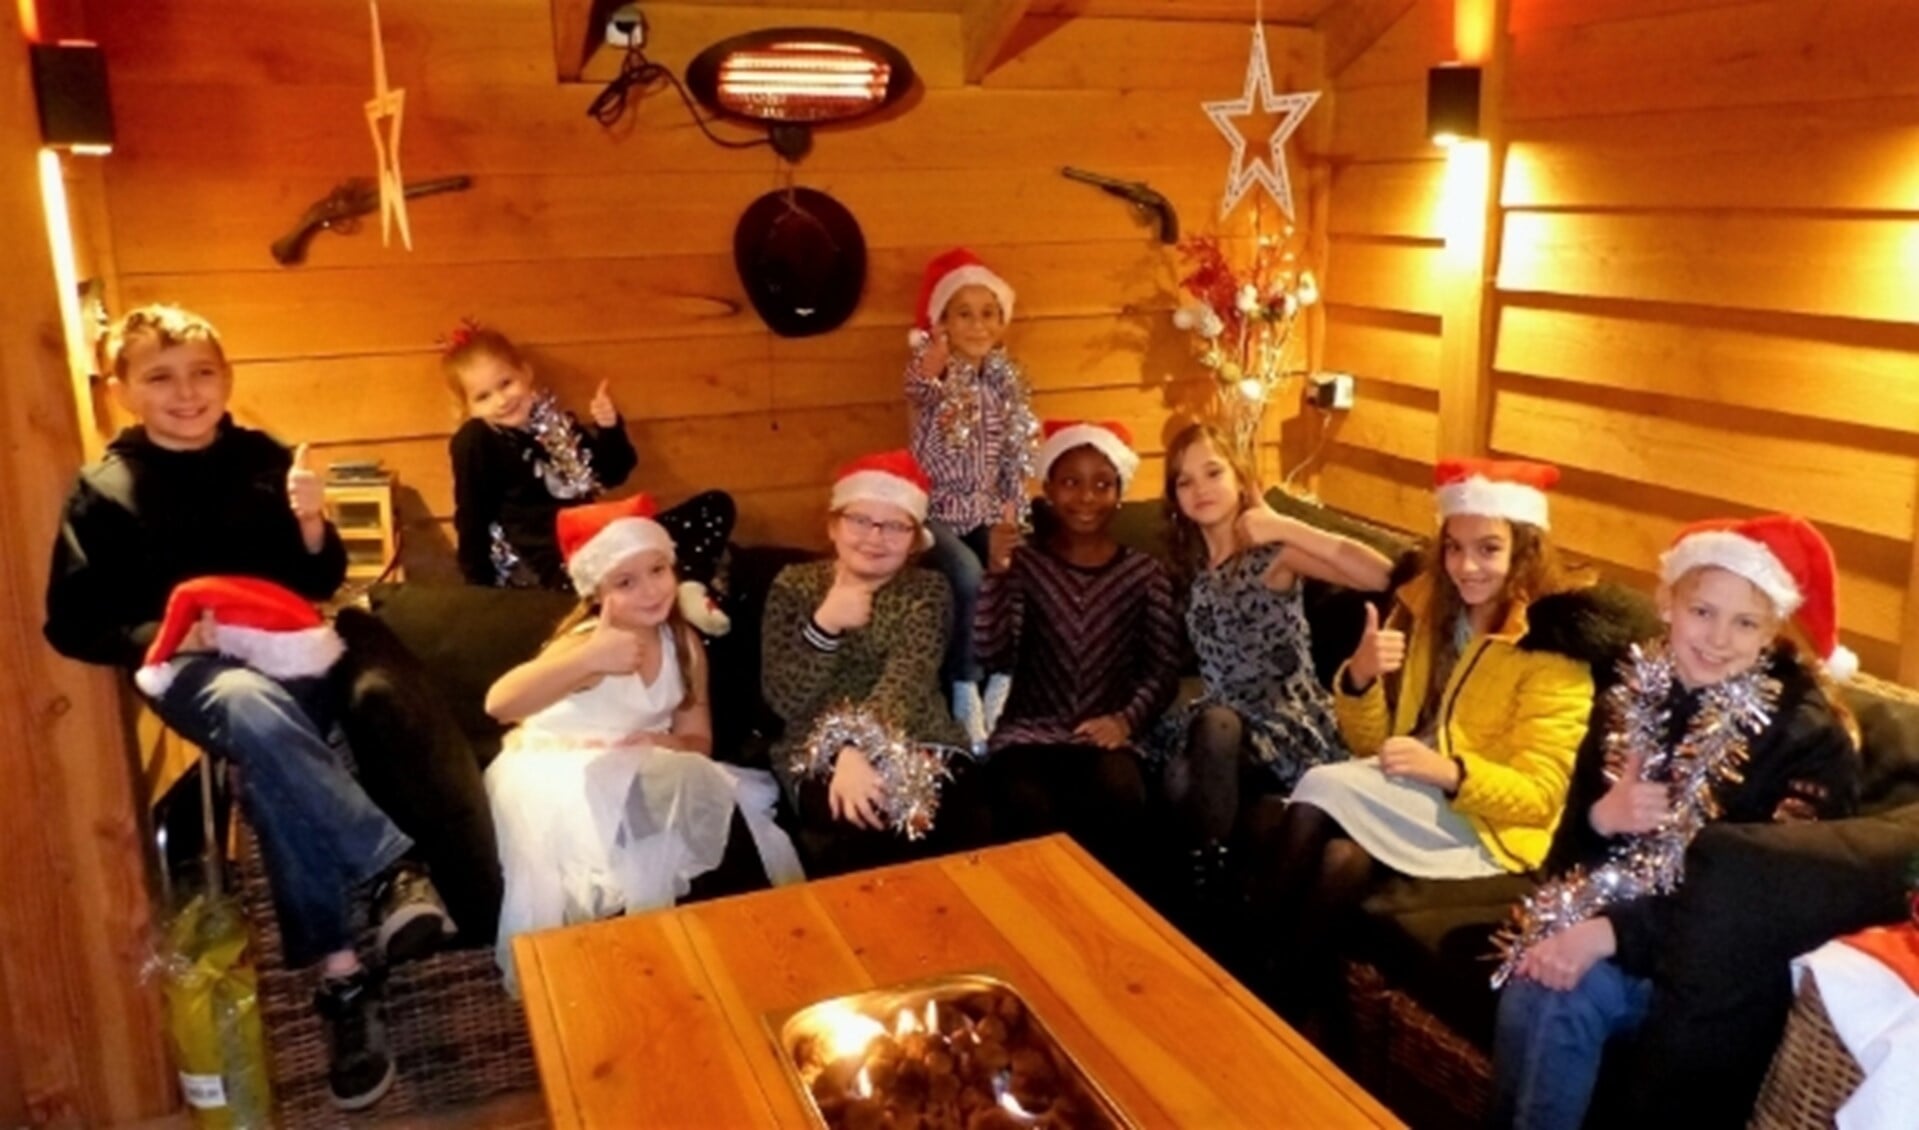 De kinderen beleven ook zelf veel plezier aan de opnamen van de 'Kerstwensfilm'. 'Ik zing ook voor mijn oma en opa die we dit jaar niet kunnen bezoeken'. Foto: Roel van Deursen. 